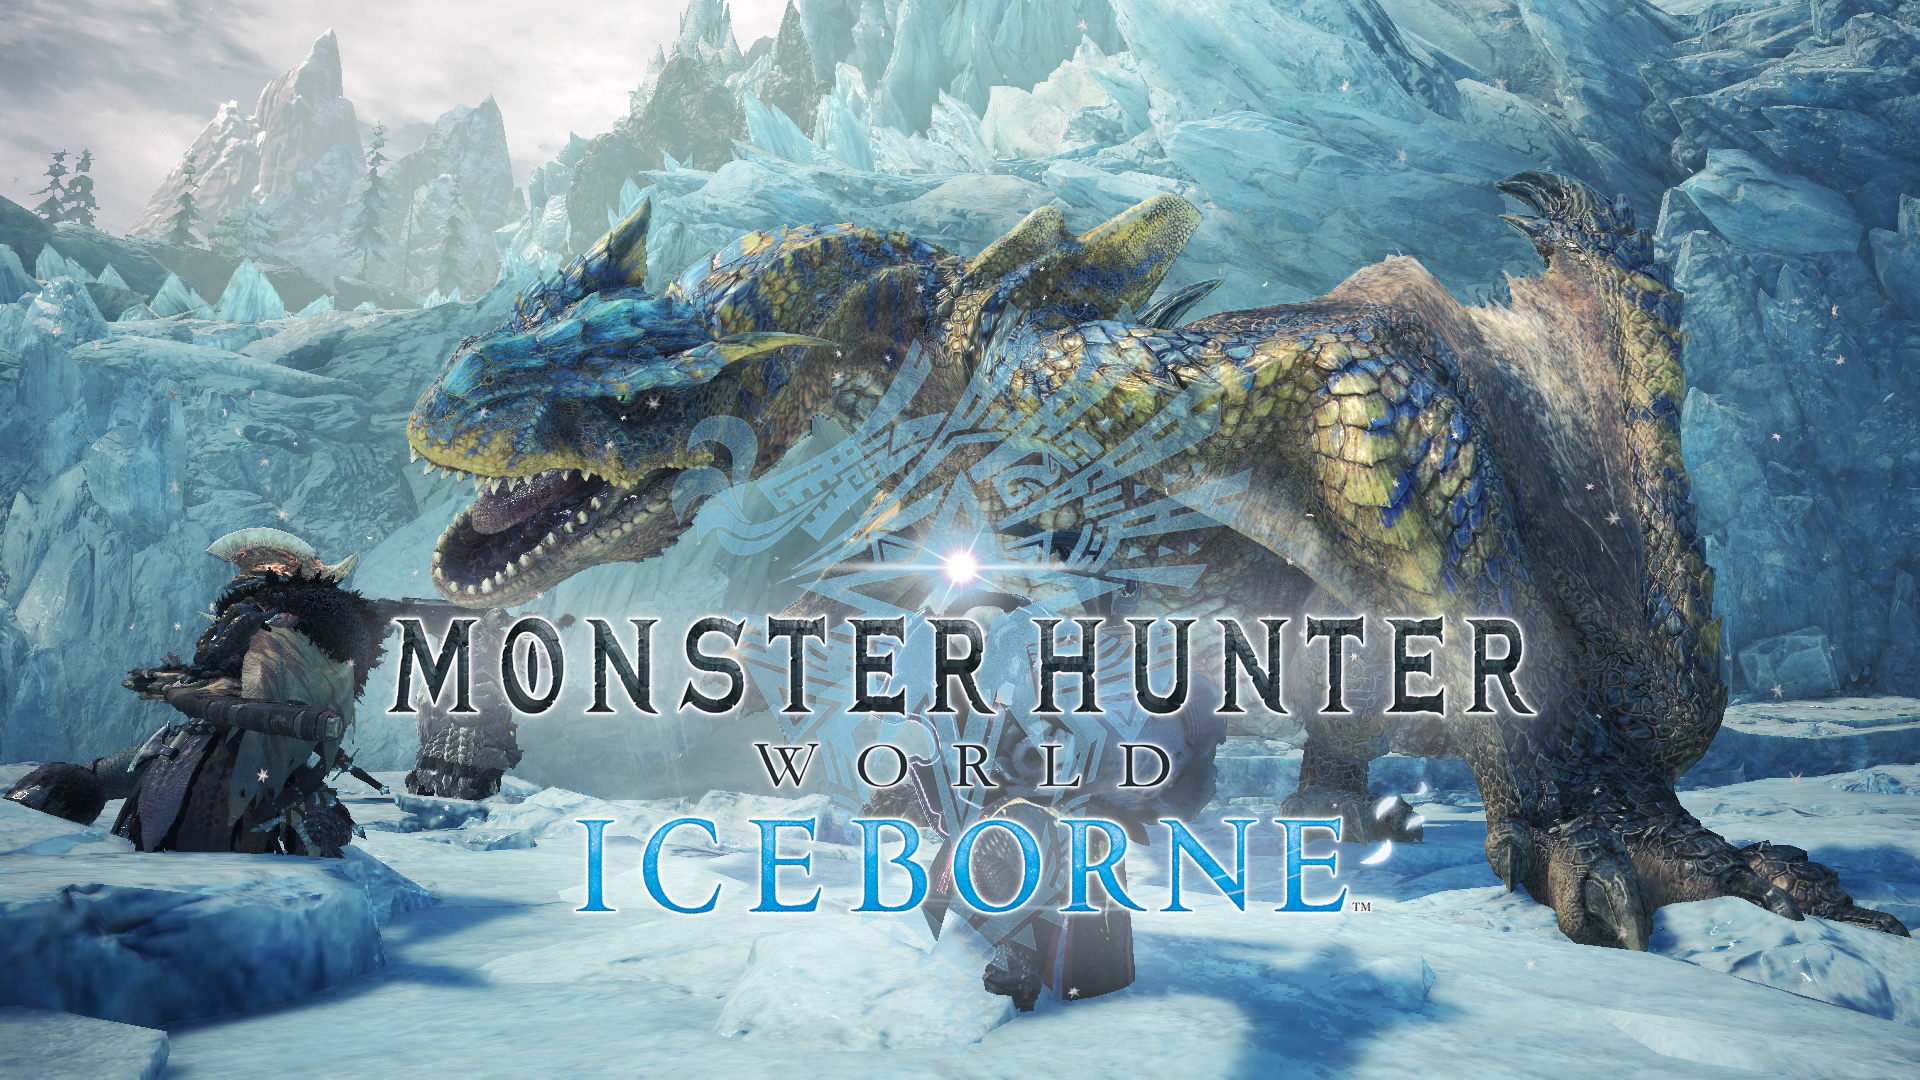 Monster Hunter World Iceborne Tips For The Early Game Godisageek Com